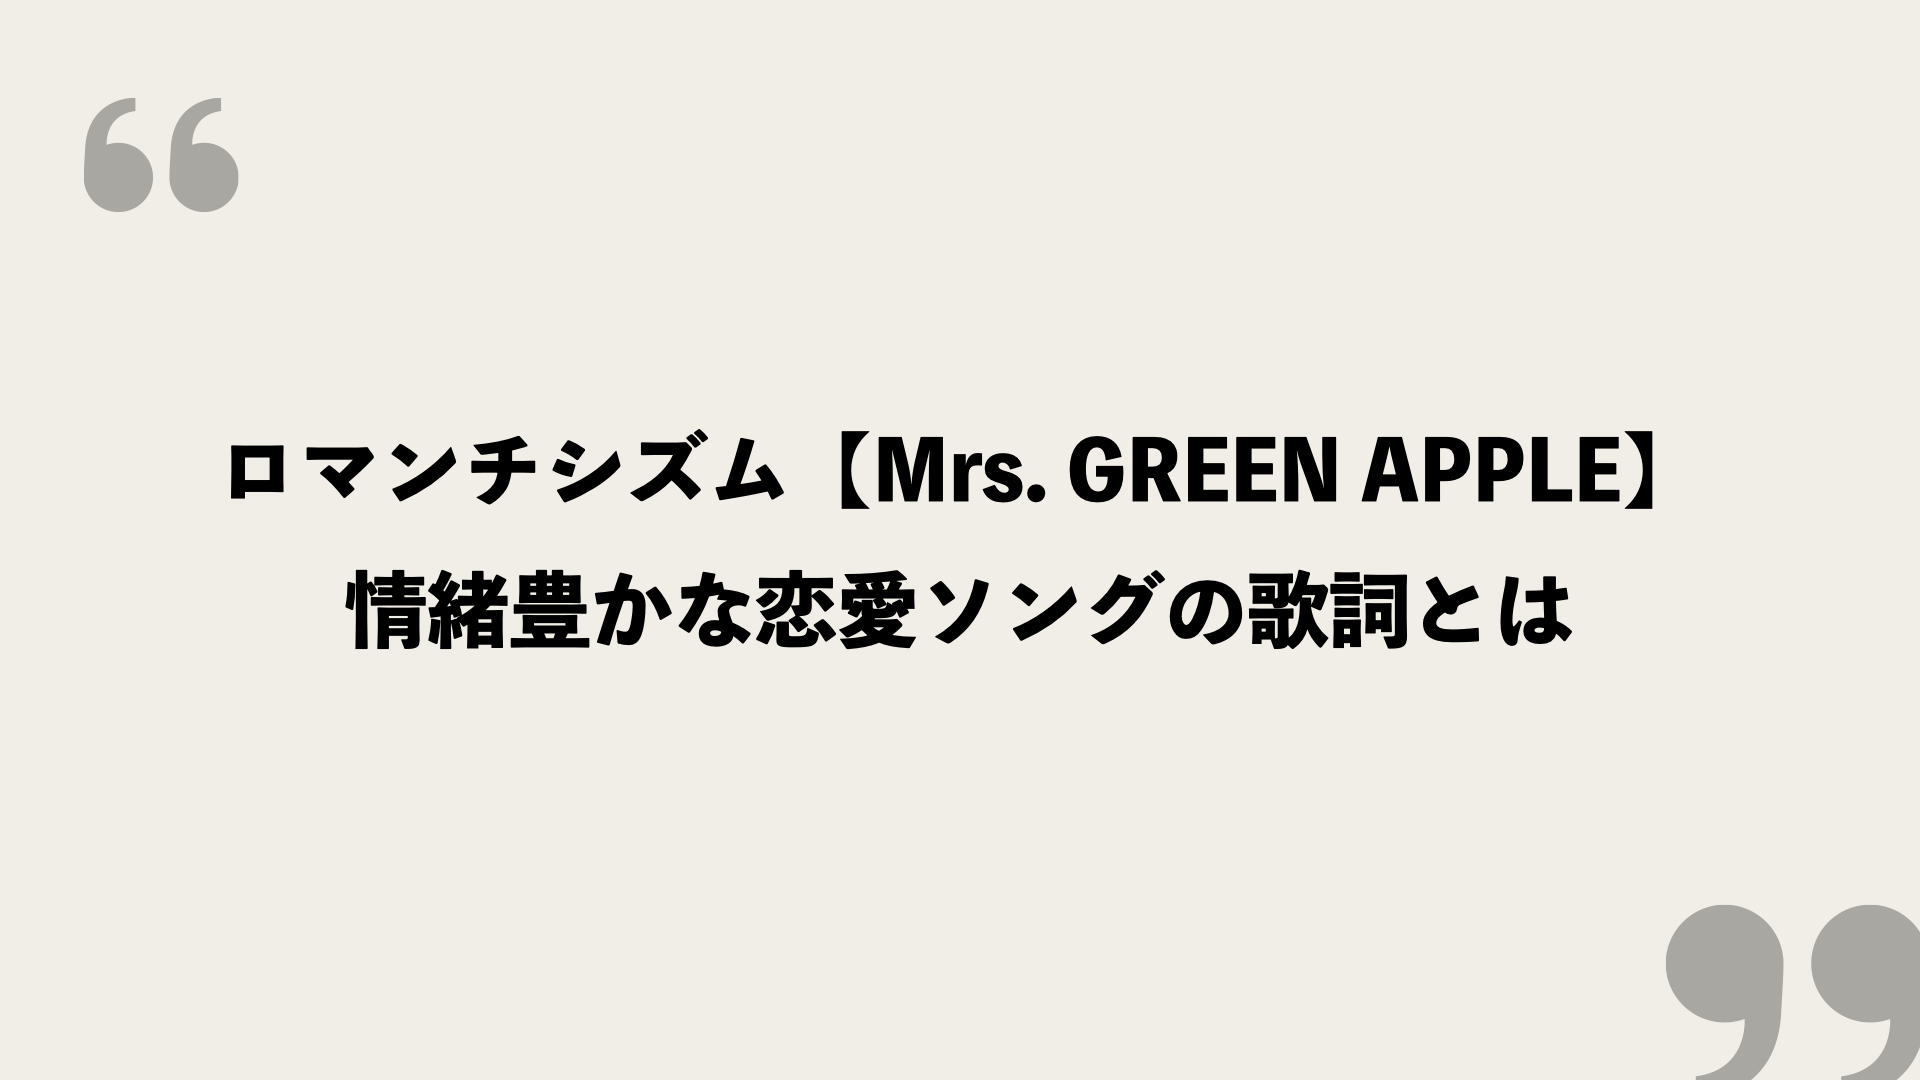 ロマンチシズム Mrs Green Apple の歌詞を考察 情緒豊かな恋愛ソングの歌詞とは Framu Media